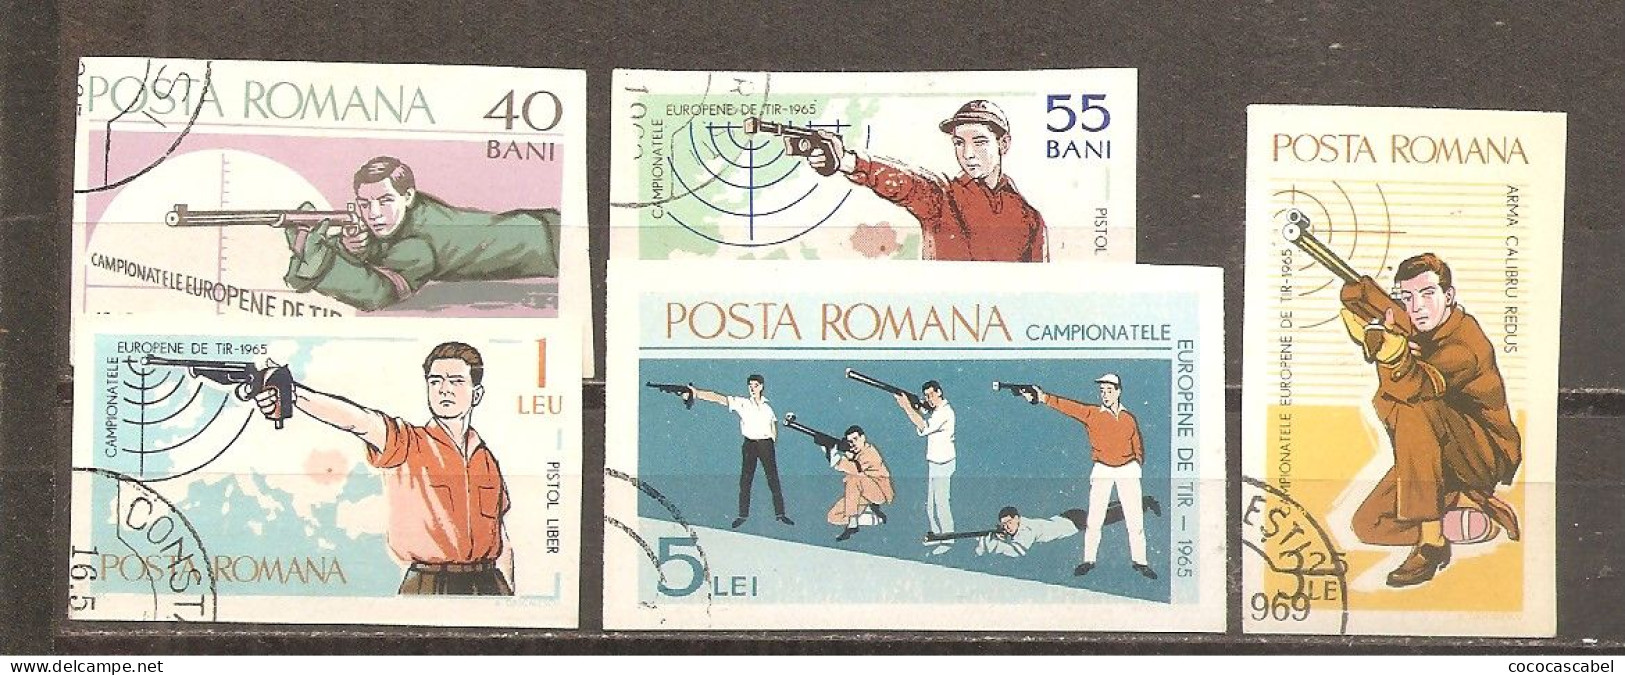 Rumanía Yvert Nº 2131A-C, 2131E-F (usado) (o) - Used Stamps